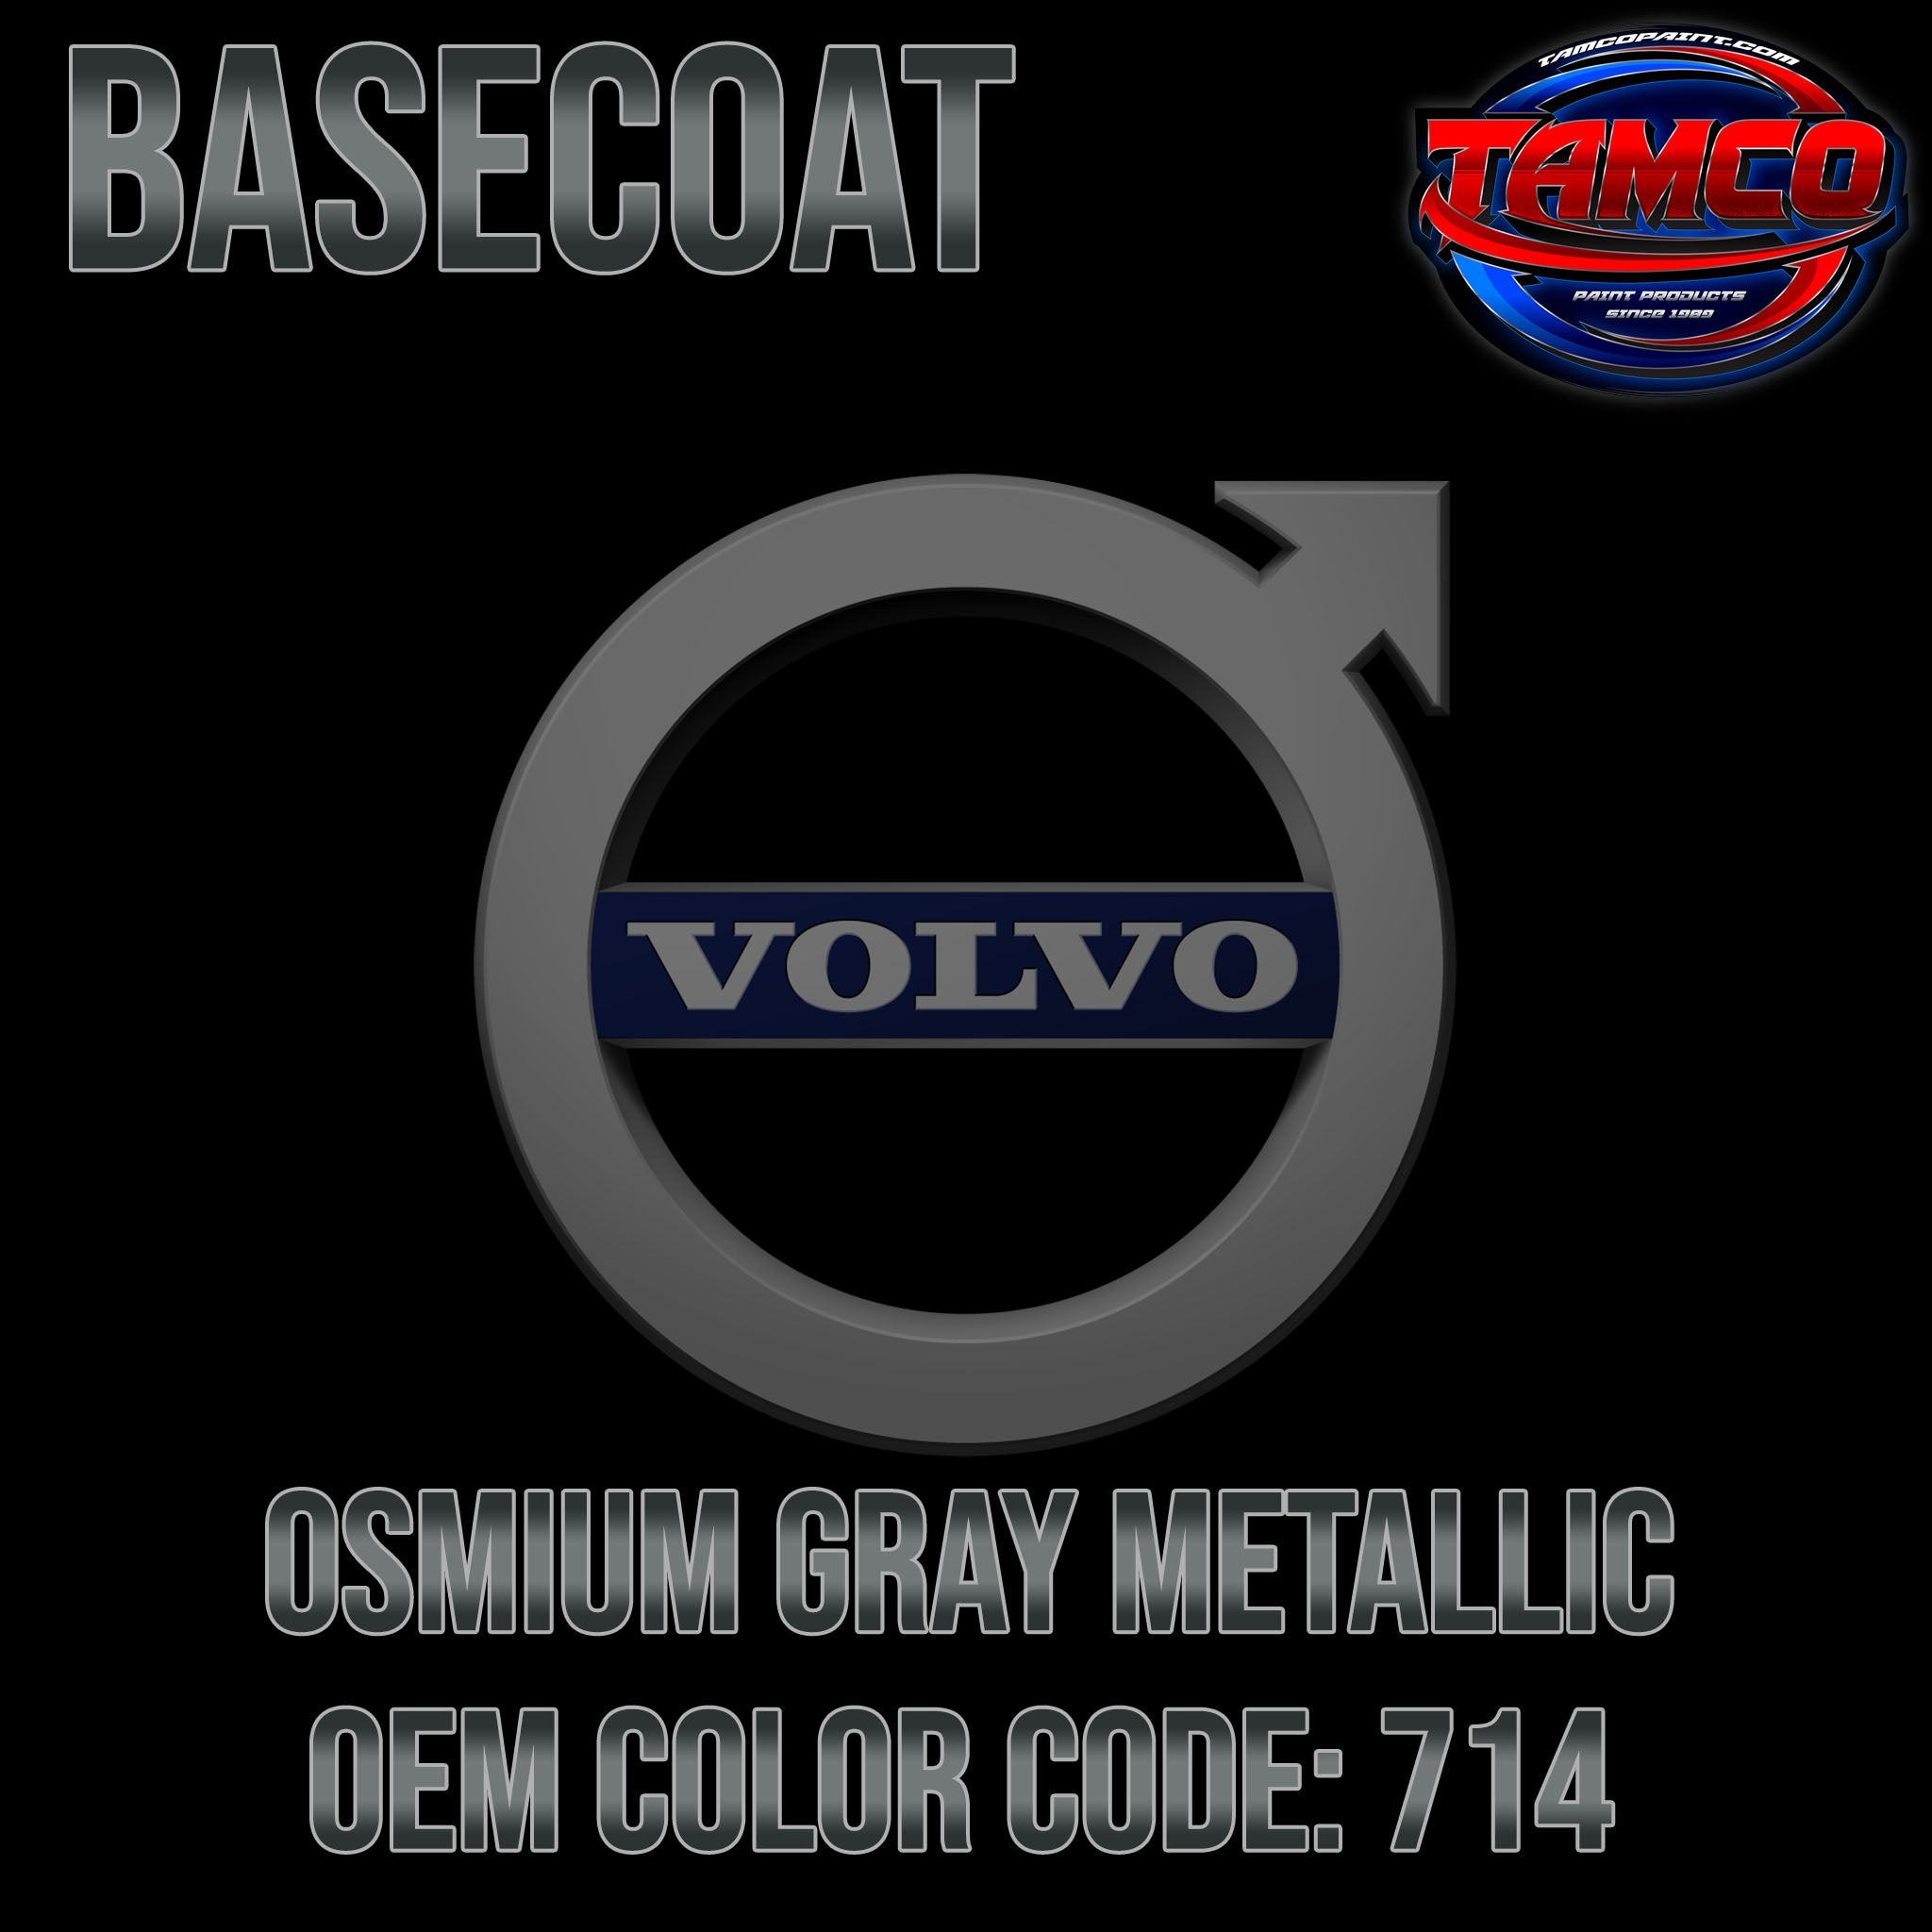 Volvo Osmium Gray Metallic | 714 | 2015-2021 | OEM Basecoat